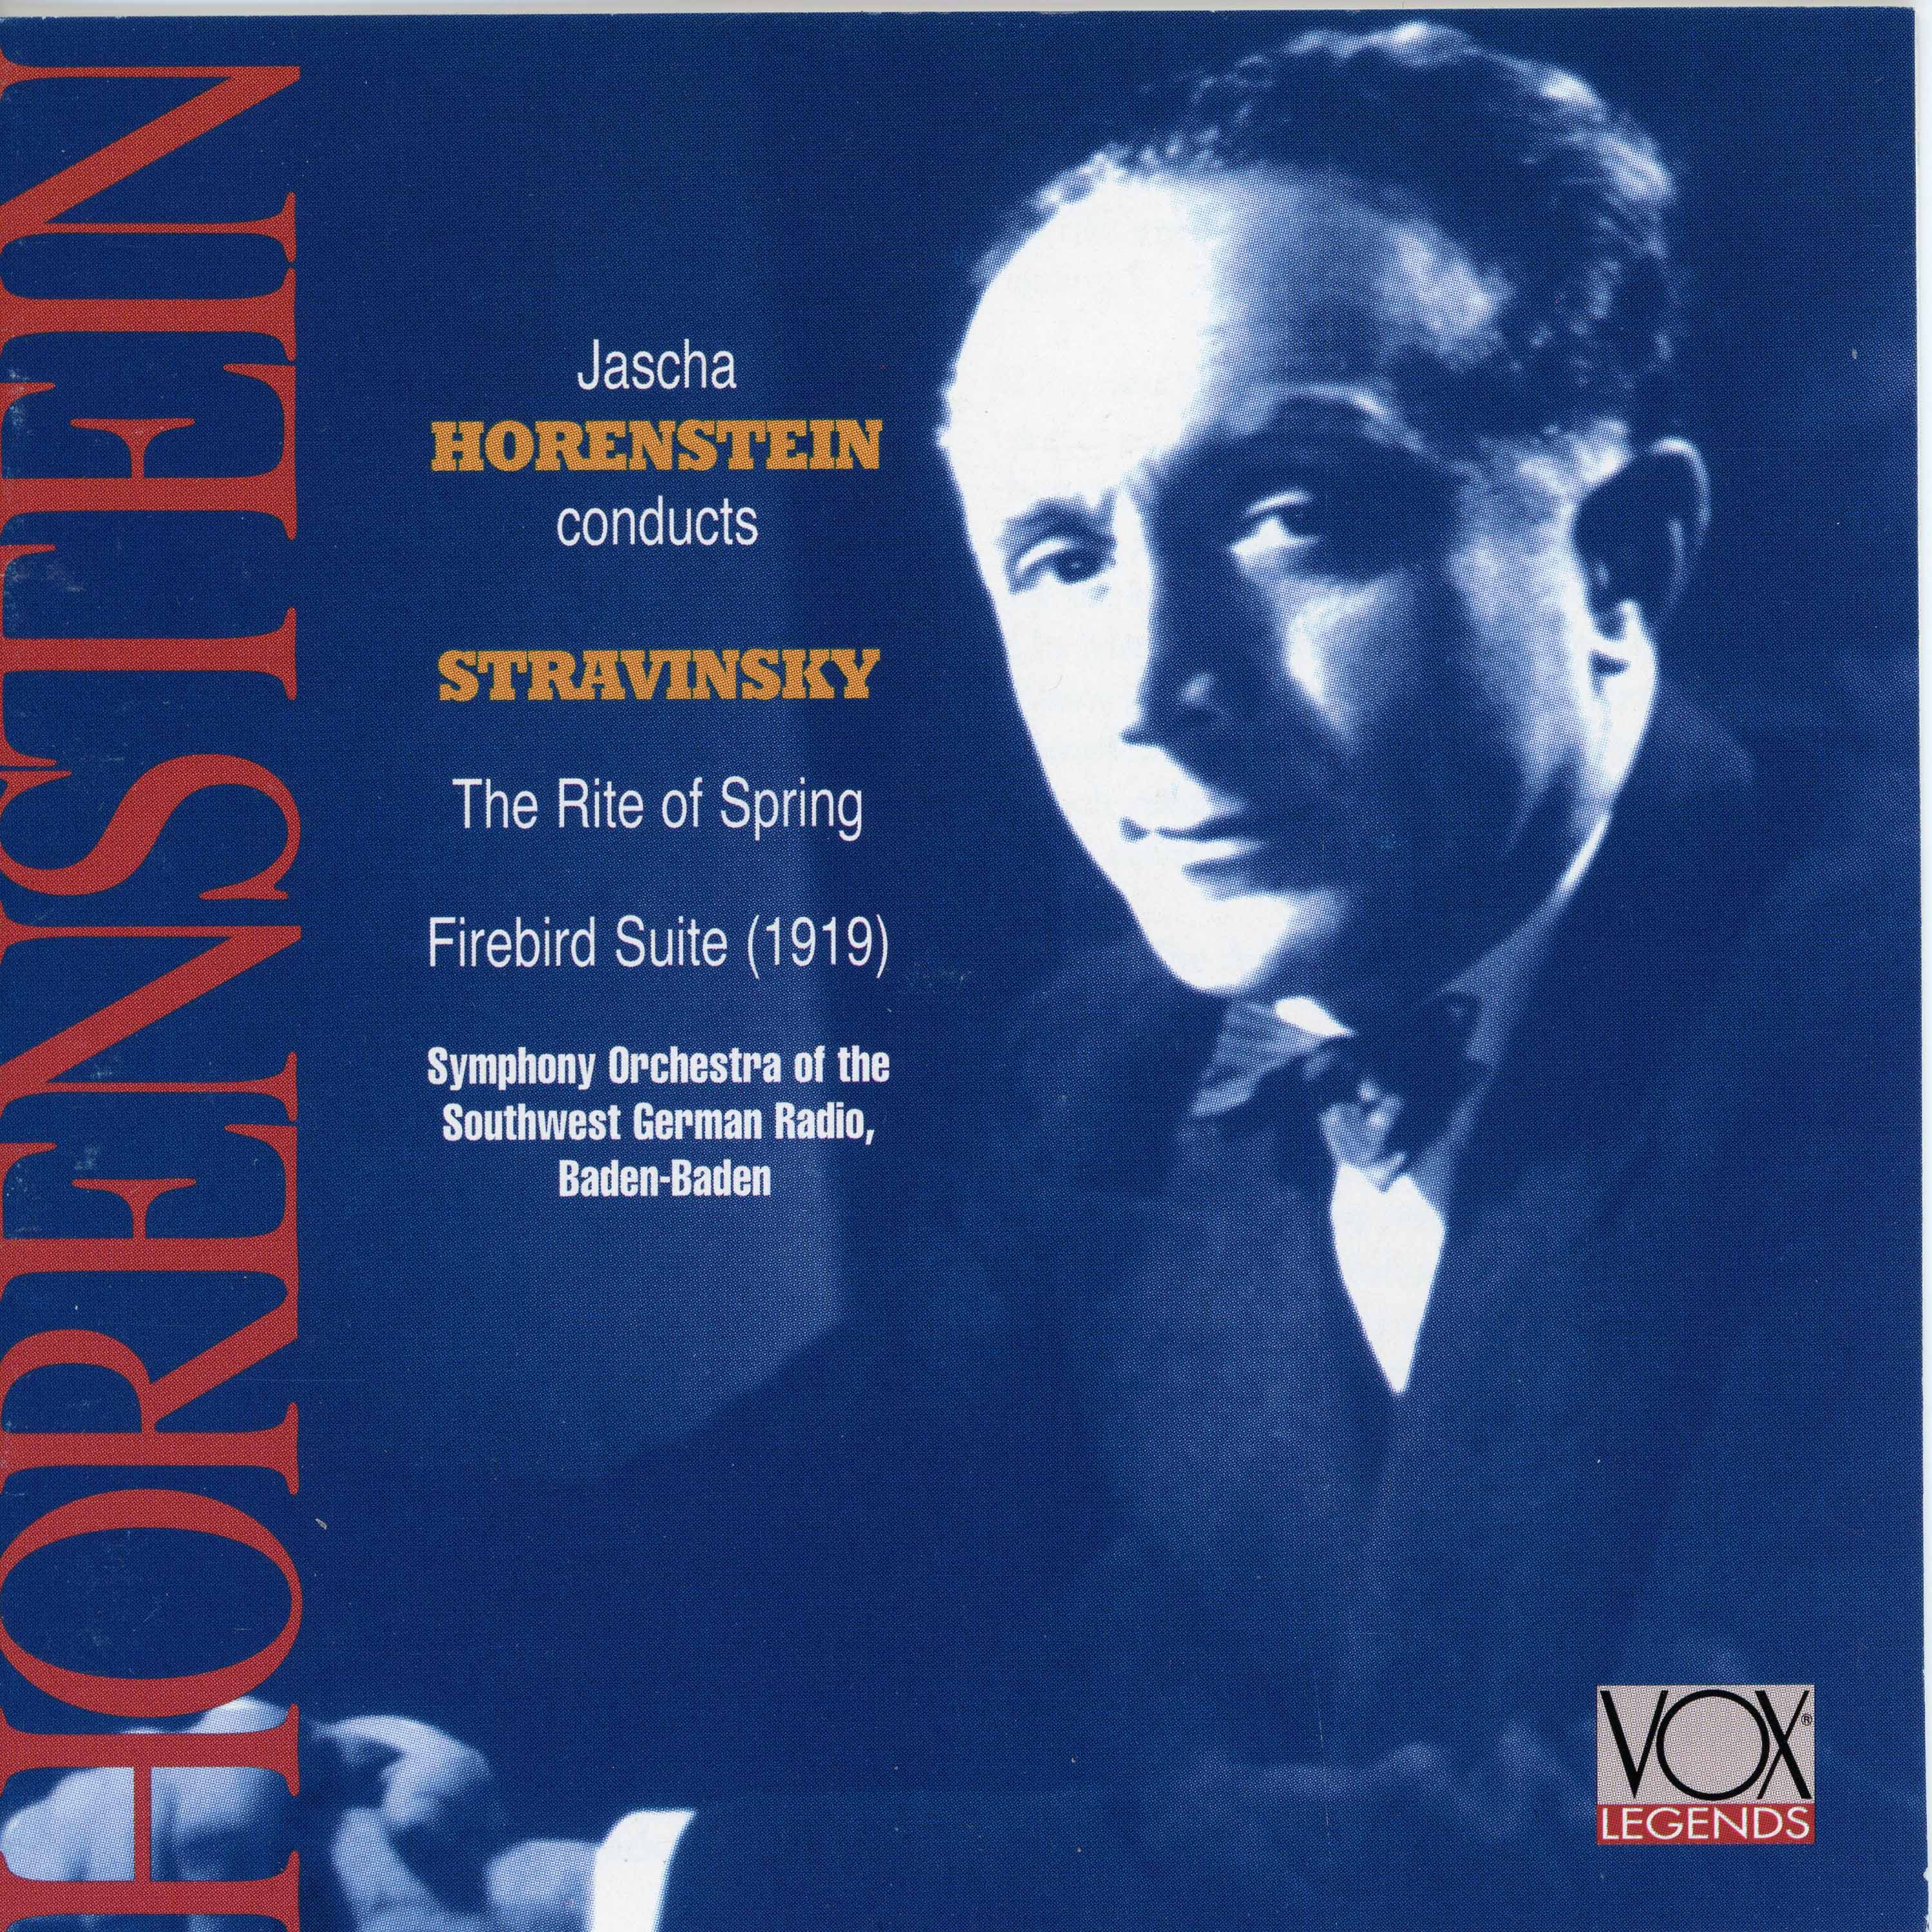 Stravinsky: Le sacre du printemps & The Firebird Suite